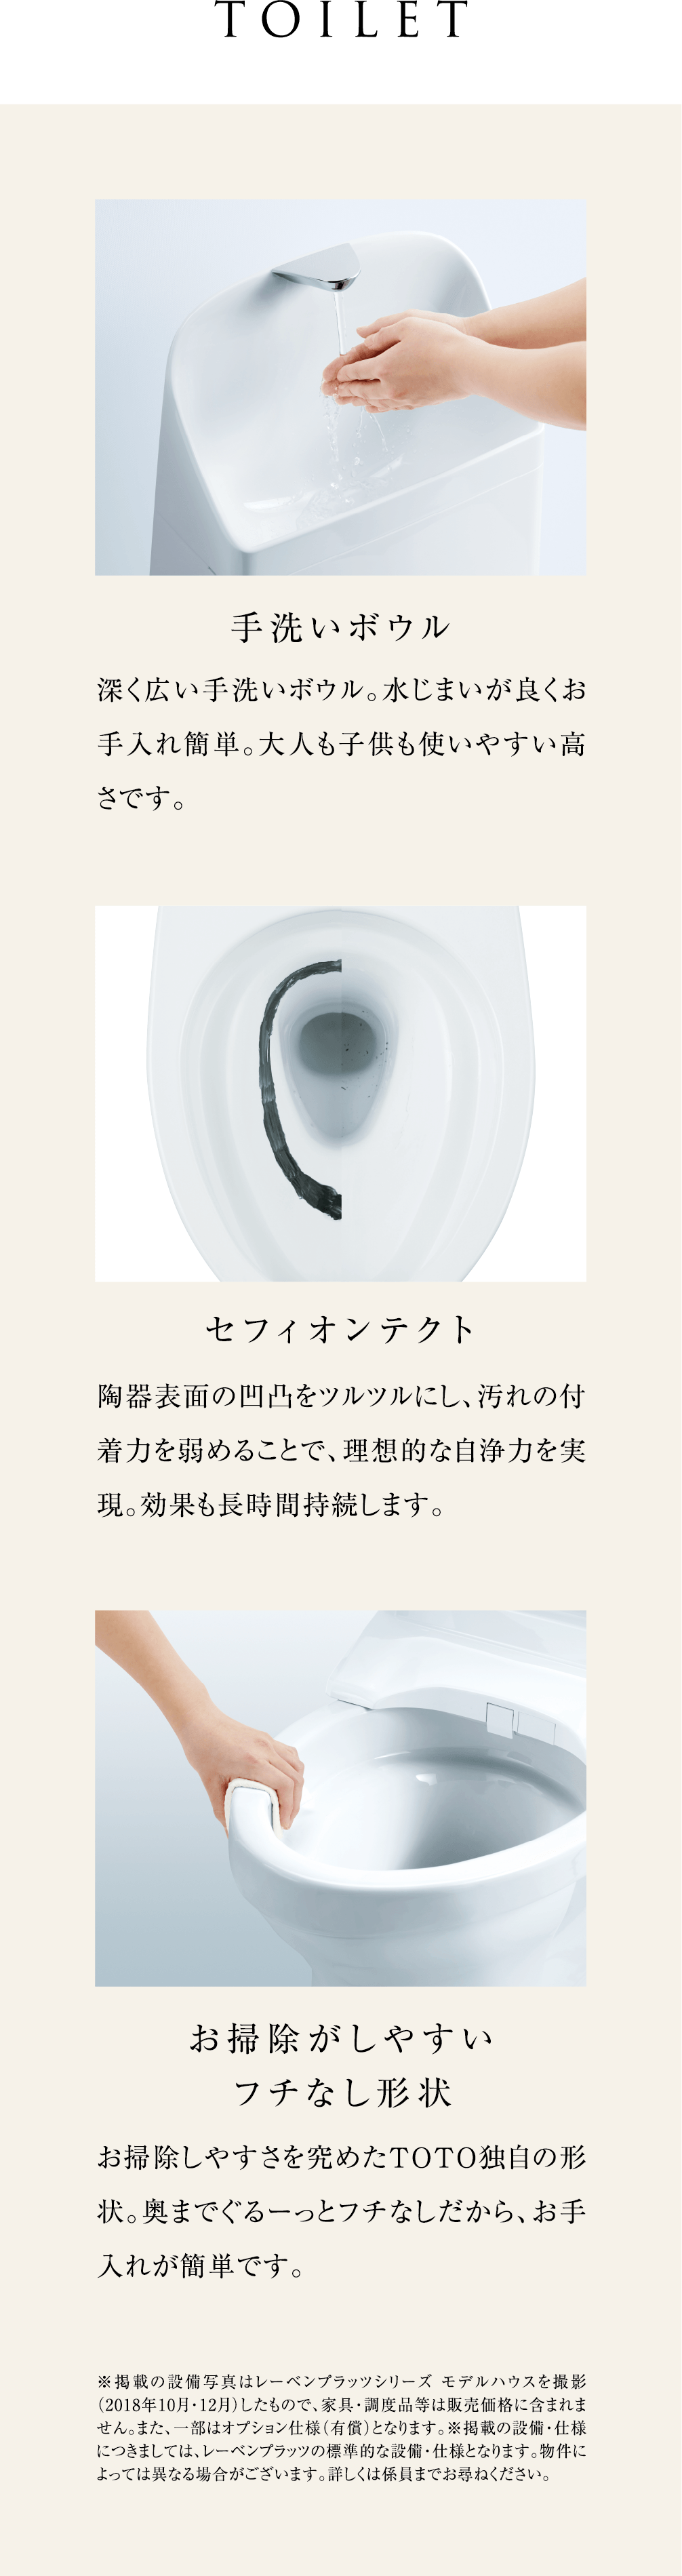 topSec05 Toilet